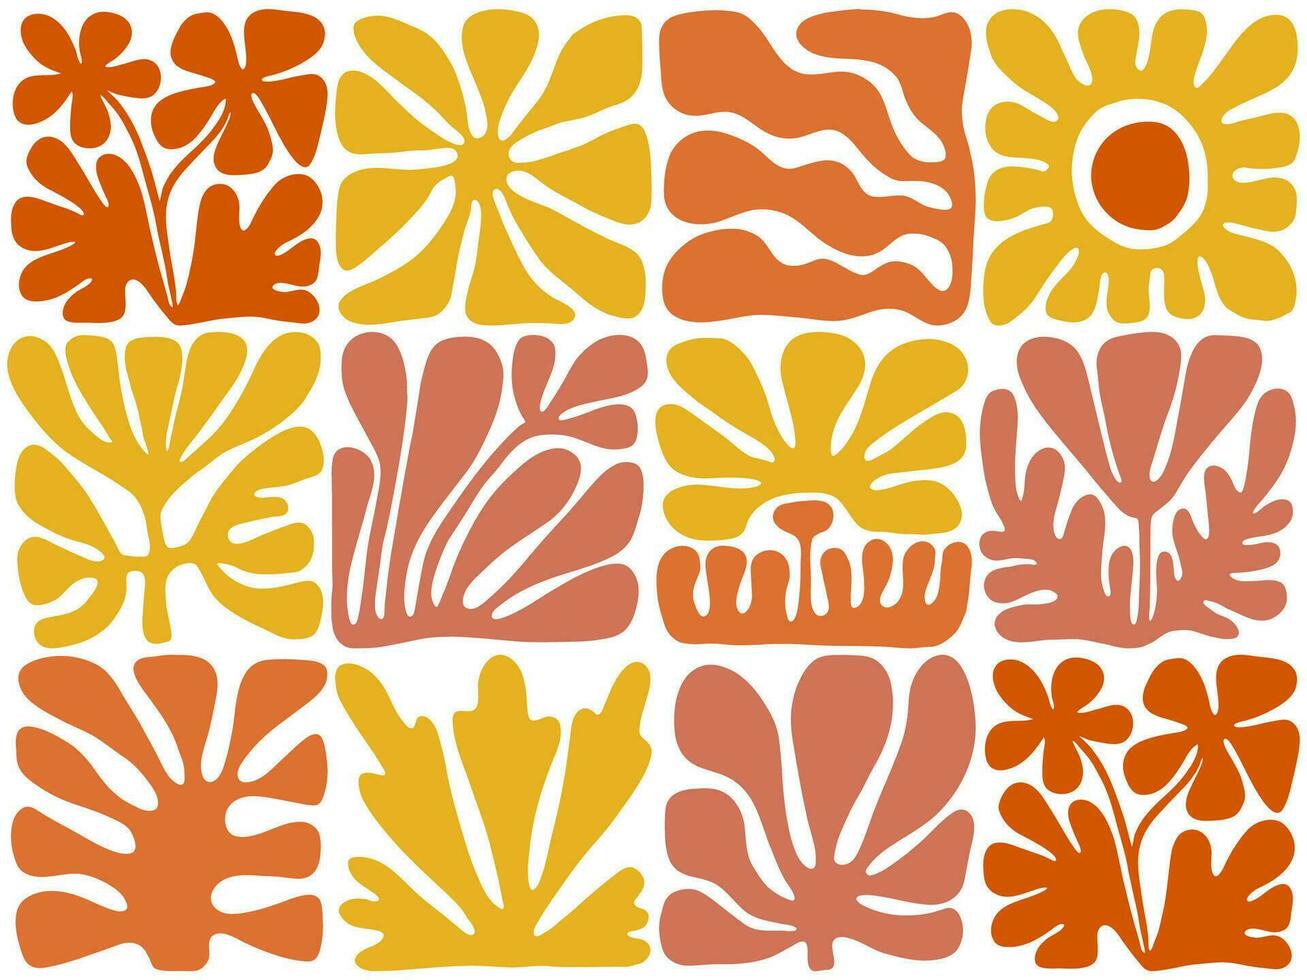 abstract bloemen tegels achtergrond. modern midden eeuw bloemen en meetkundig vormen vector illustratie.